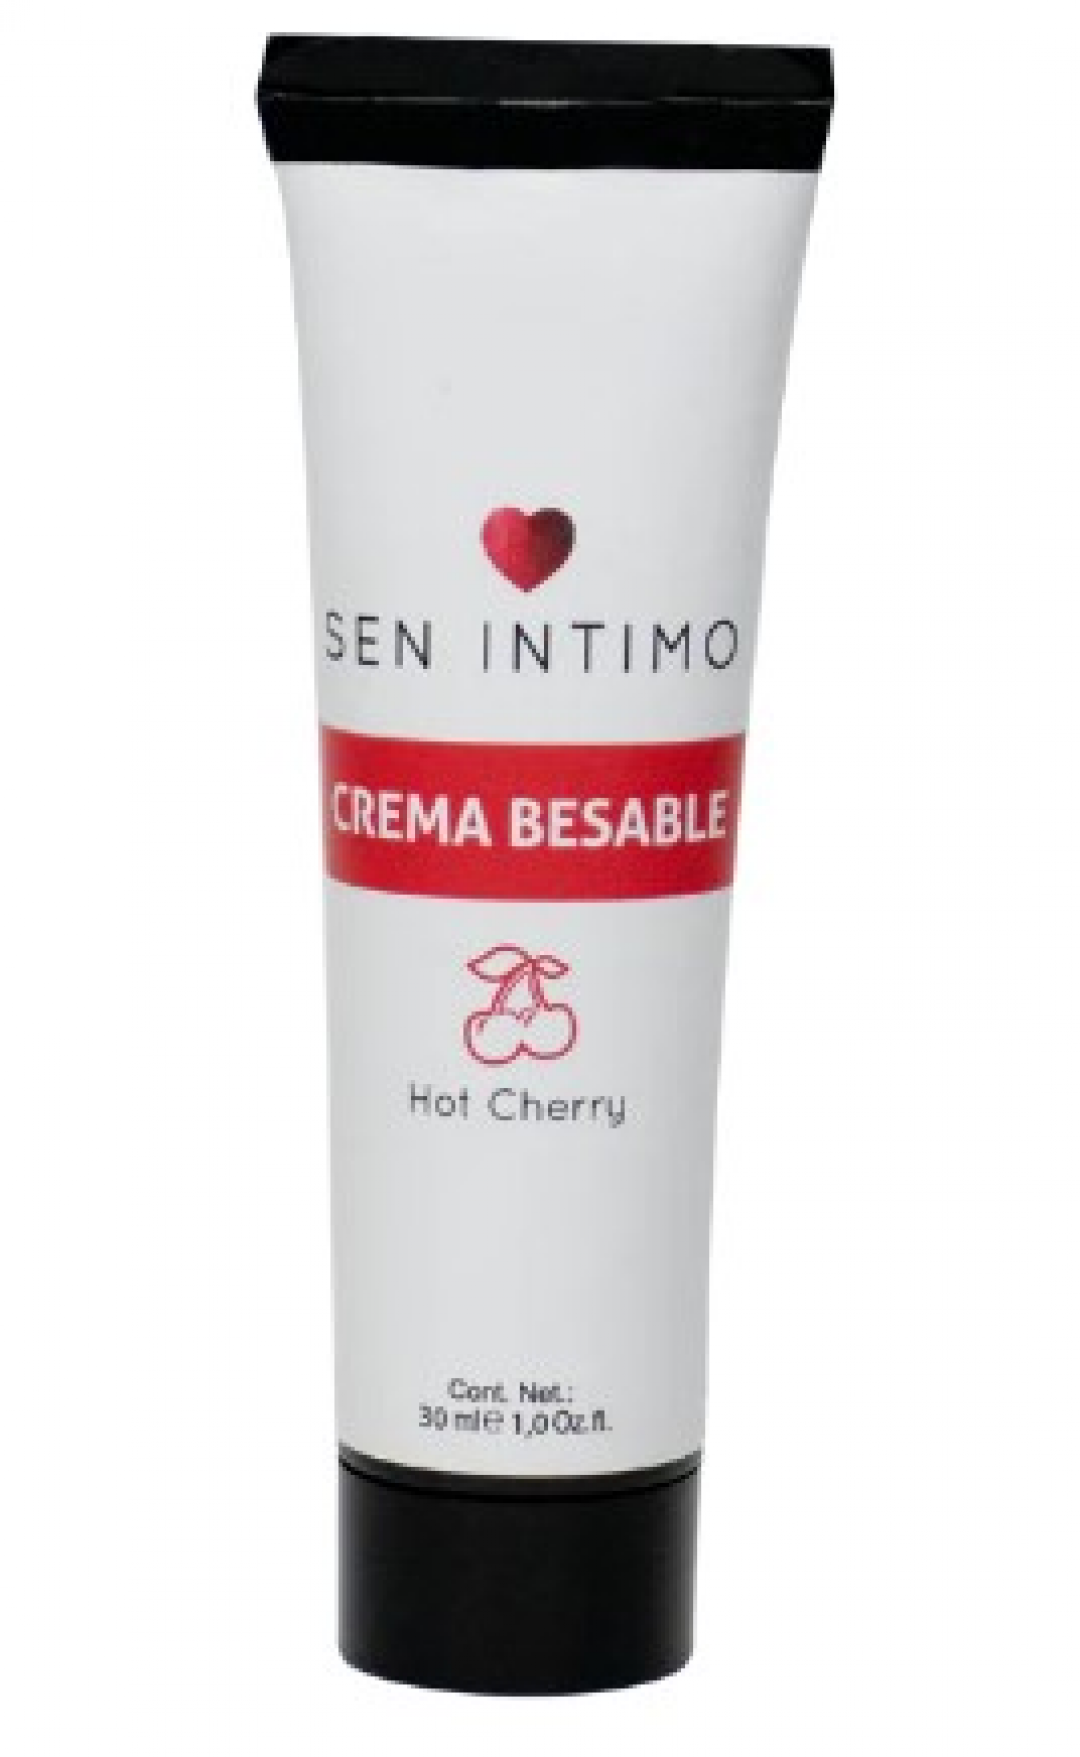 Crema besable hot cherry x 30ml